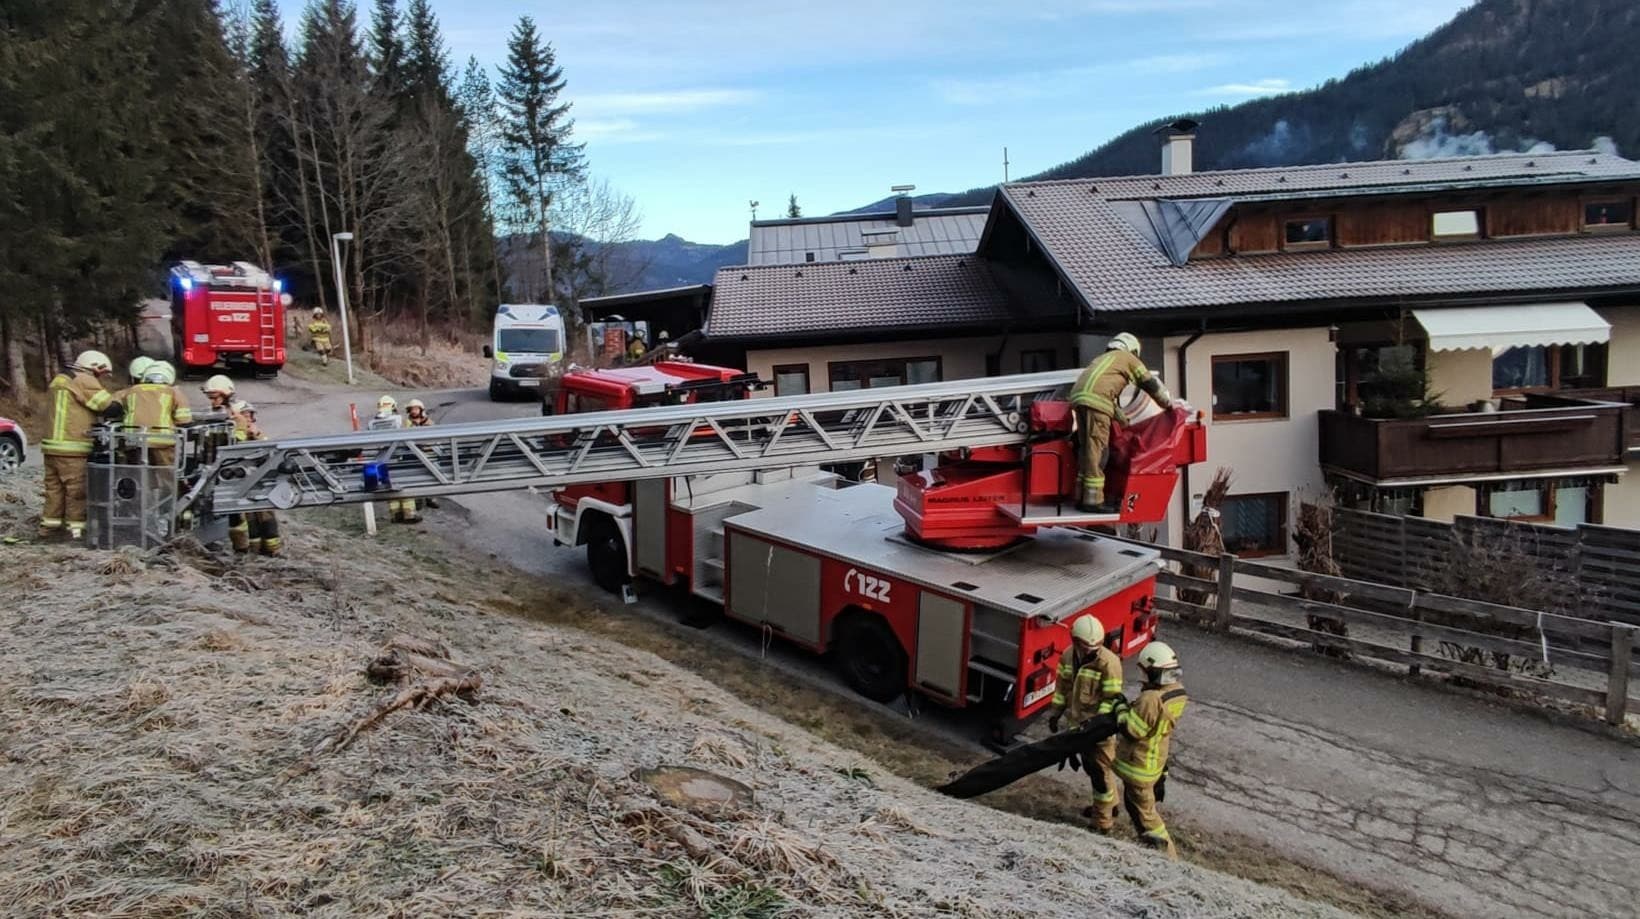 Schock in Tiroler Ort - Pkw von Feuerwehrleuten während Einsatz